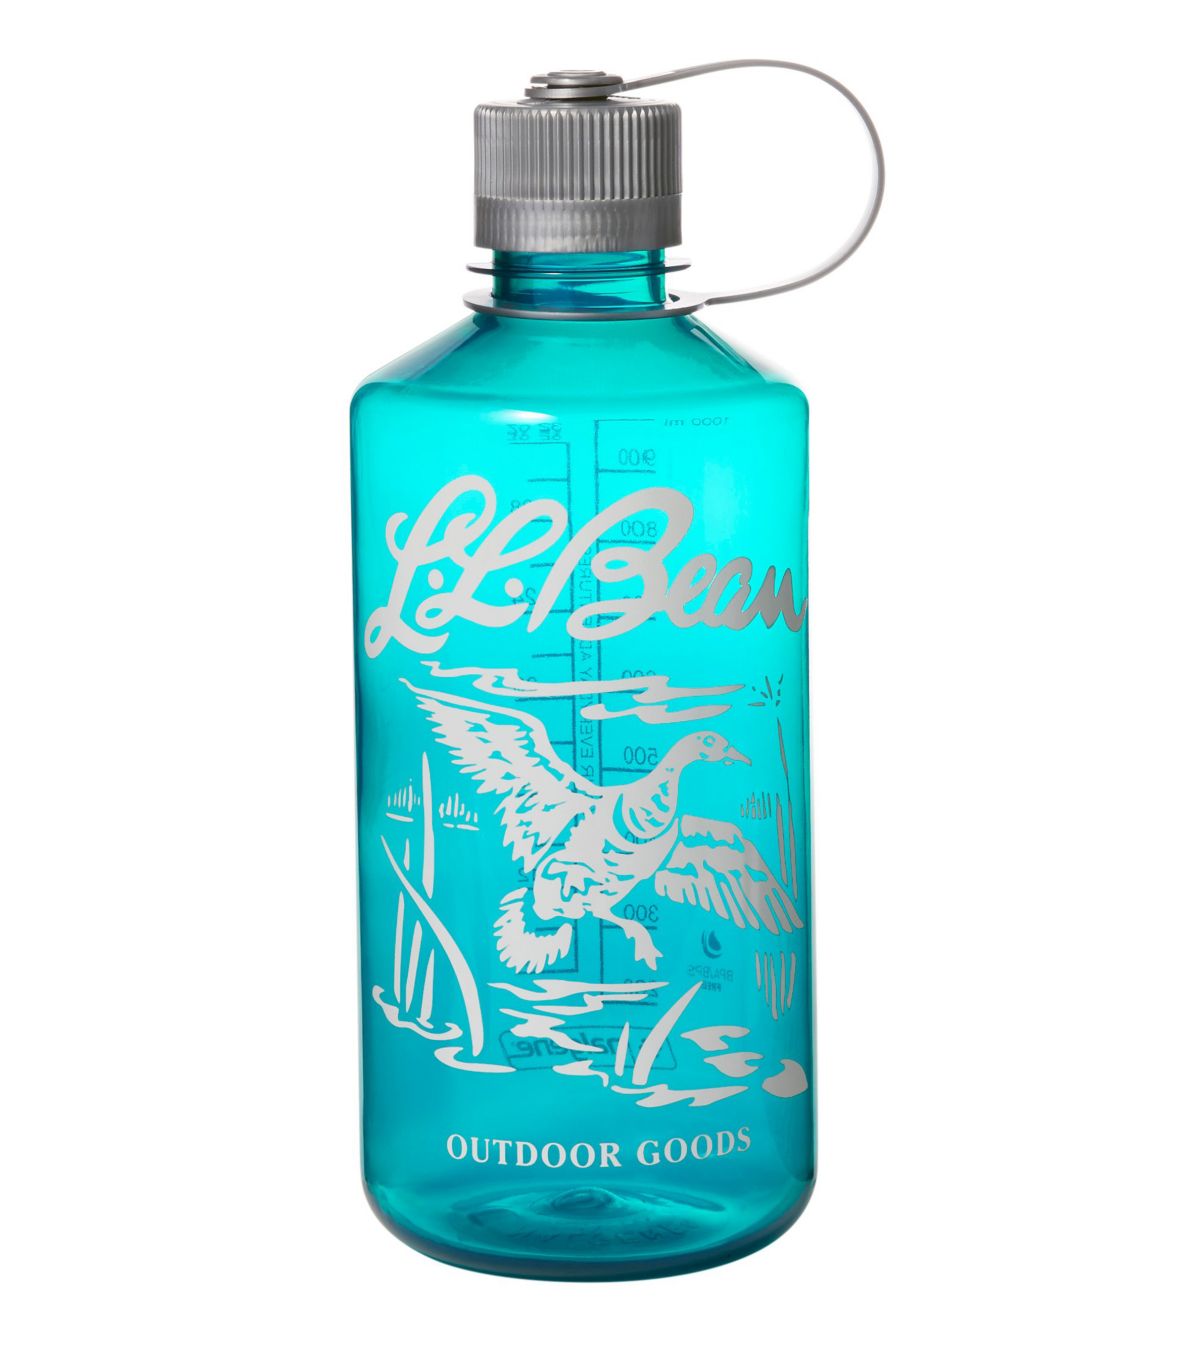 Nalgene Narrow Mouth Water Bottle with L.L.Bean Print, 32 oz.